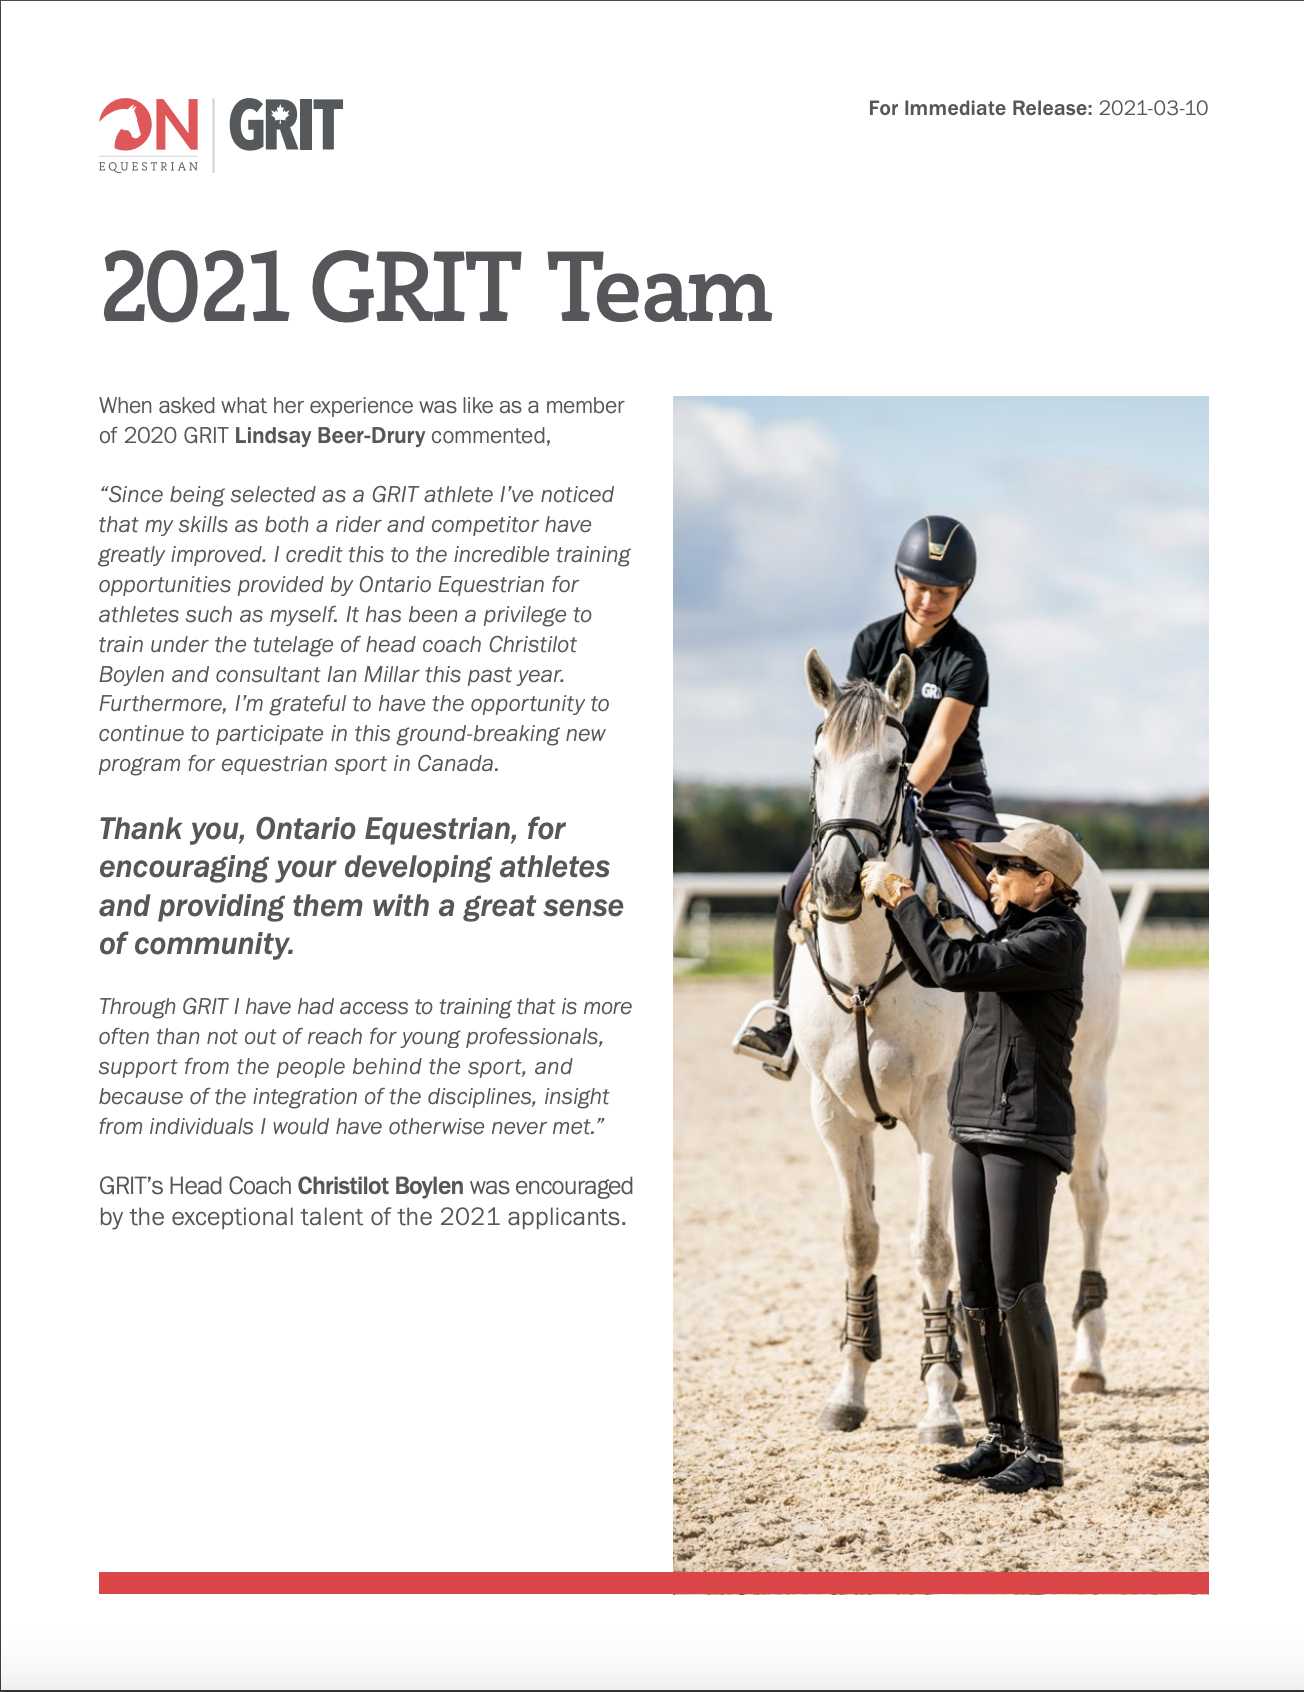 GRIT Press Release 2021